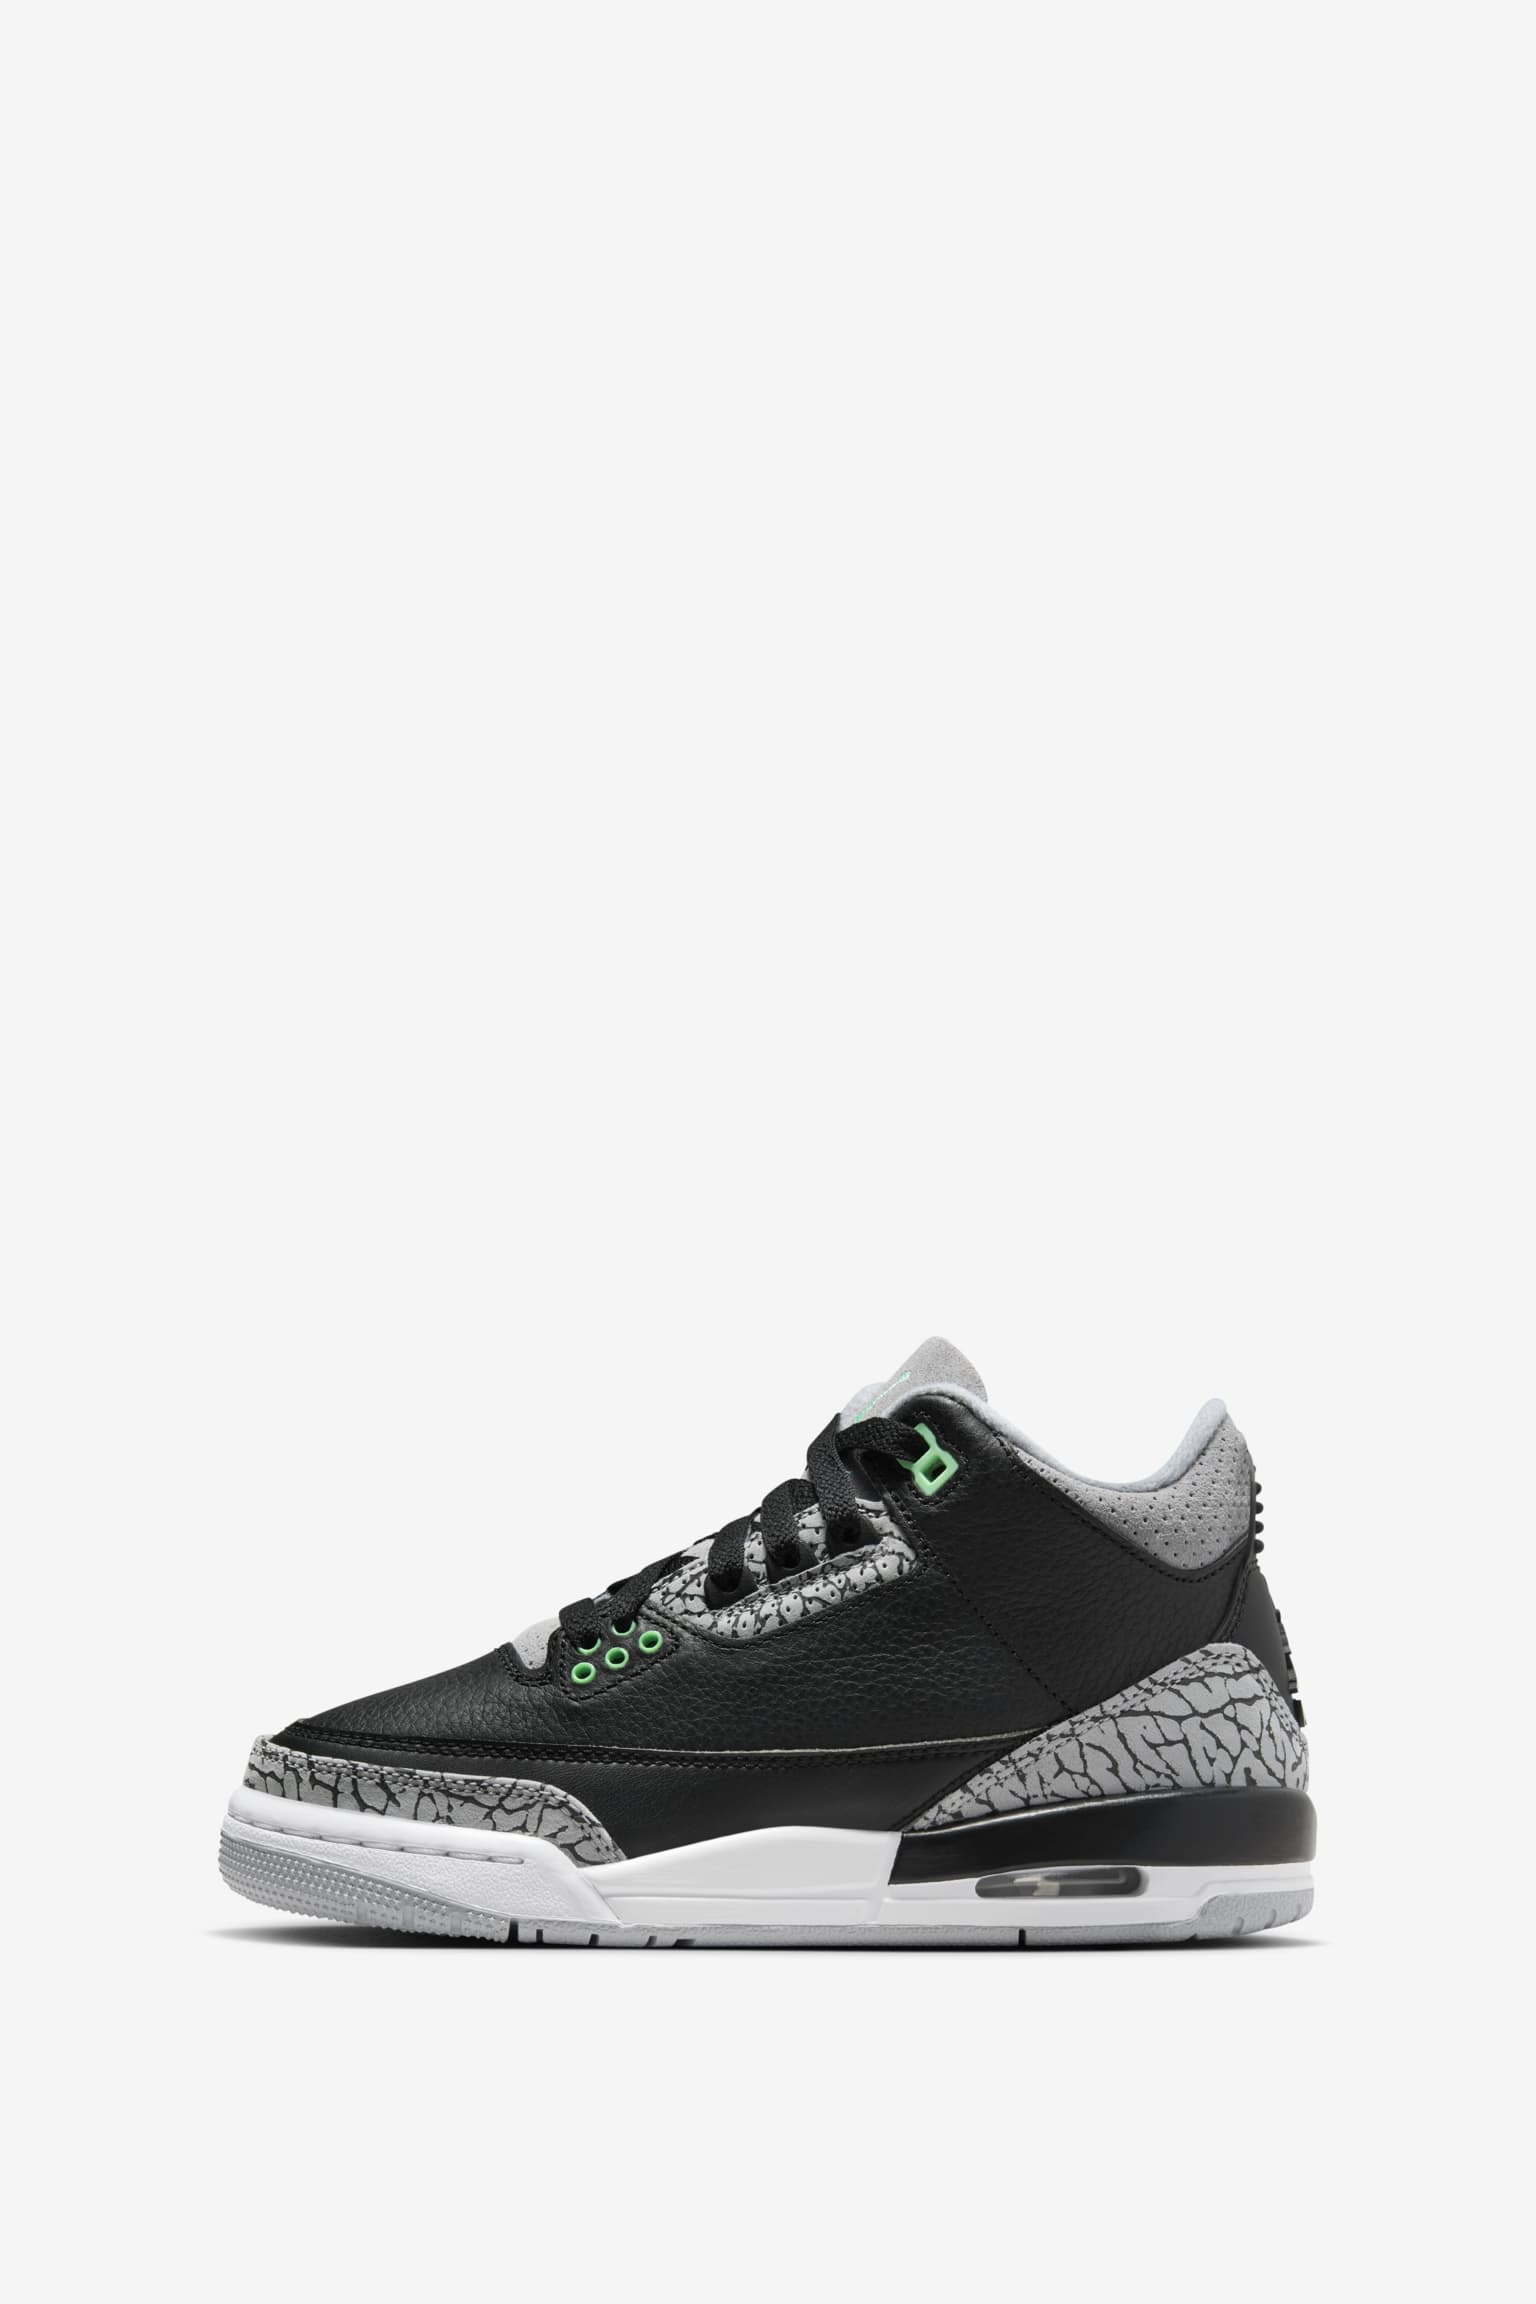 Air Jordan 3 'Green Glow' (CT8532-031) release date. Nike SNKRS NO